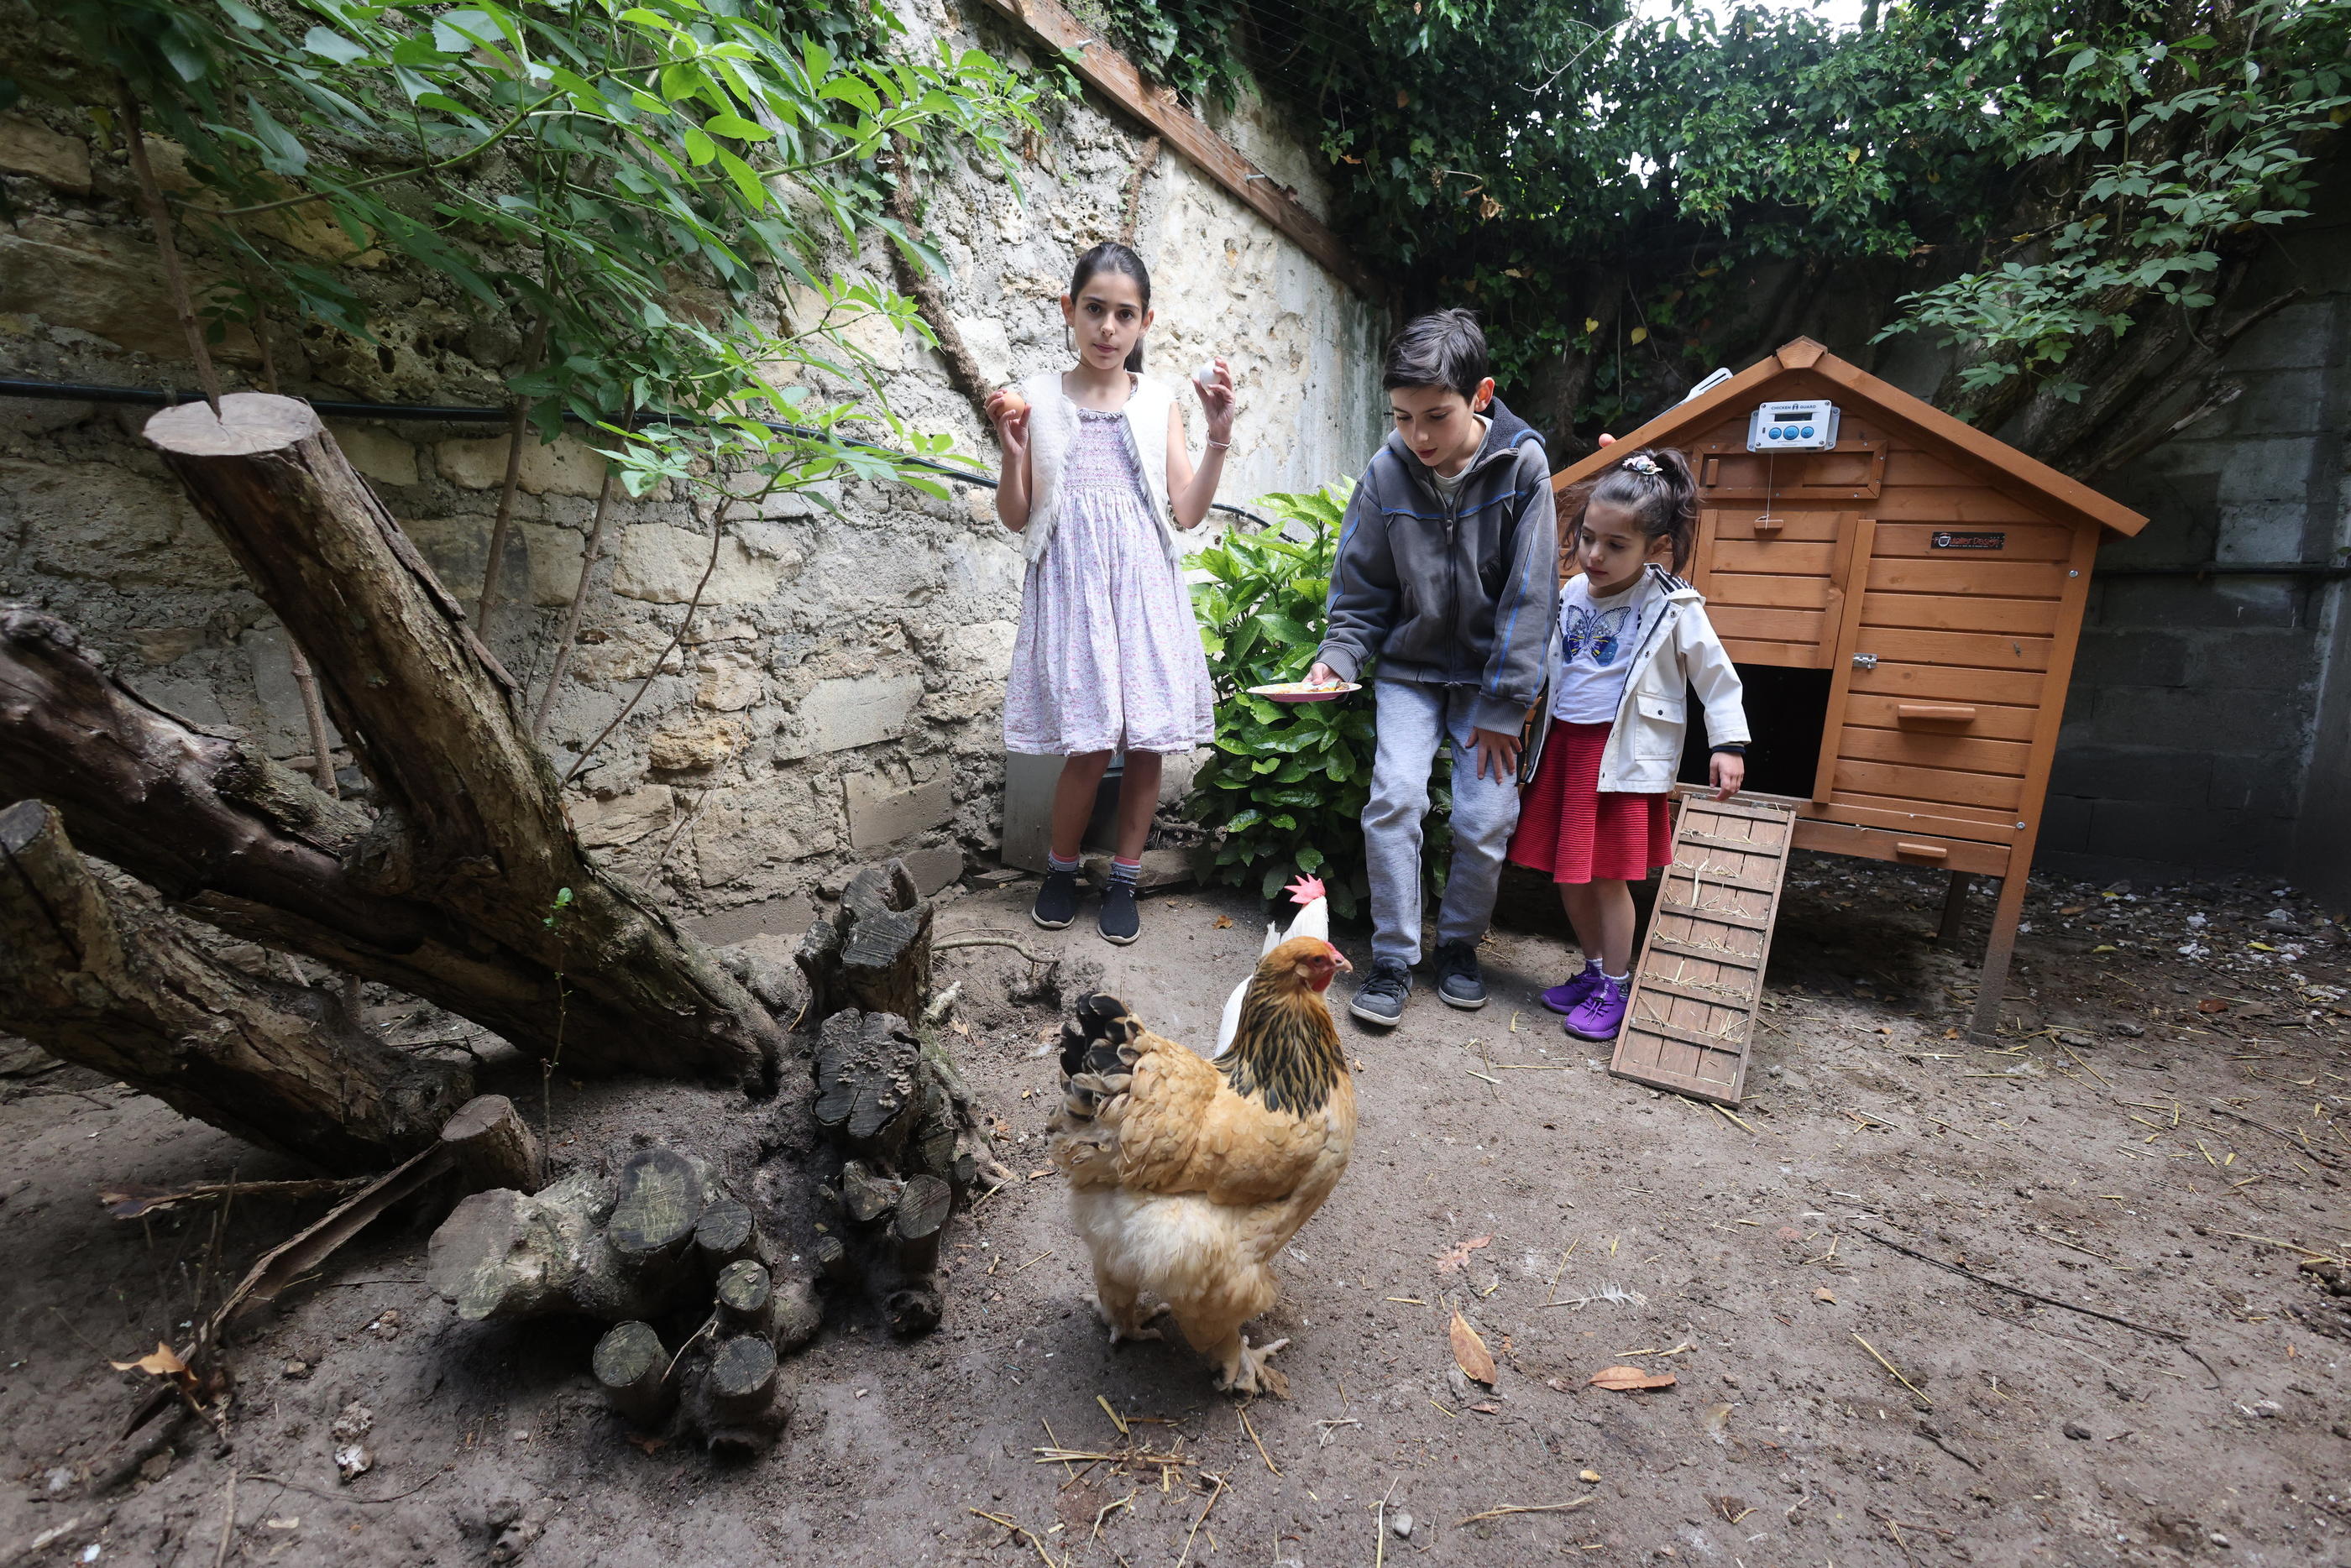 Hindi, âgé de 10 ans, élève avec ses sœurs Eva (à gauche) et Louison, trois poules pondeuses dans le fond du jardin familial, dans les Yvelines. LP/Arnaud Journois